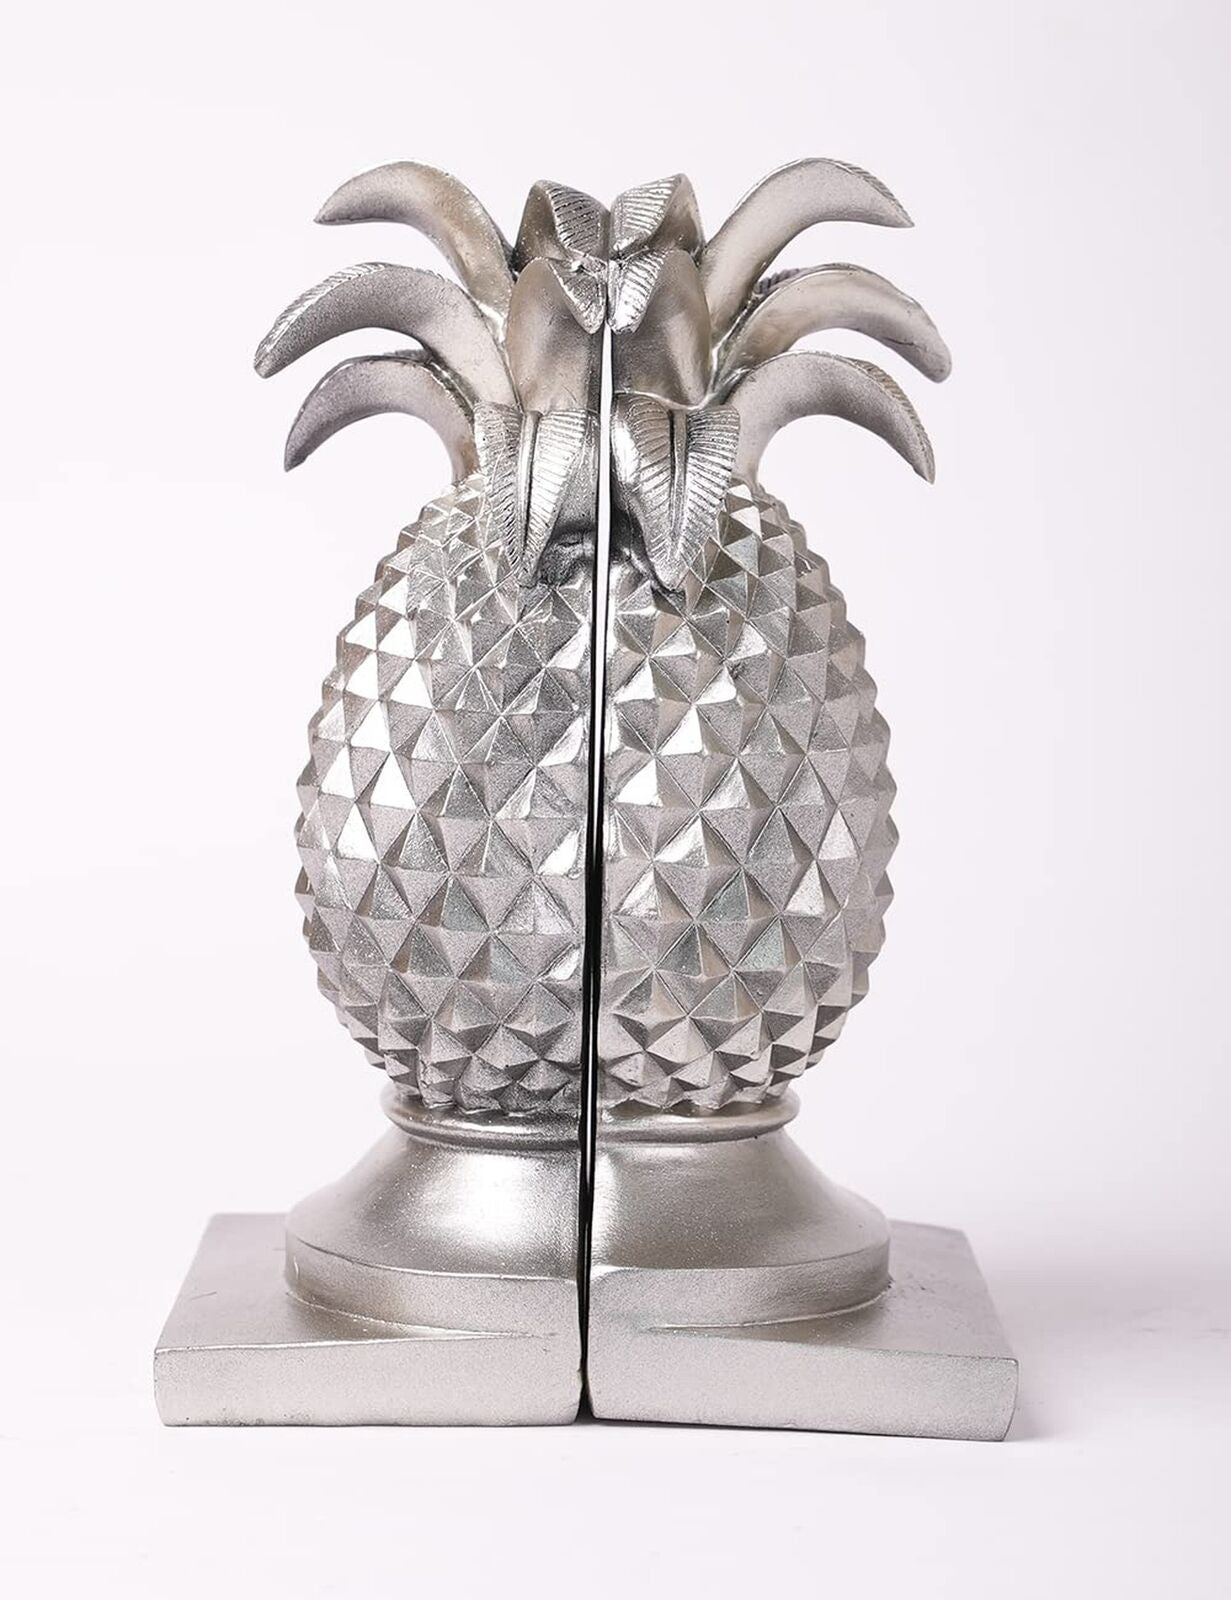 HAUCOZE Decorative Book Ends Pineapple Statue Sculpture Polyresin Figurine Gi...